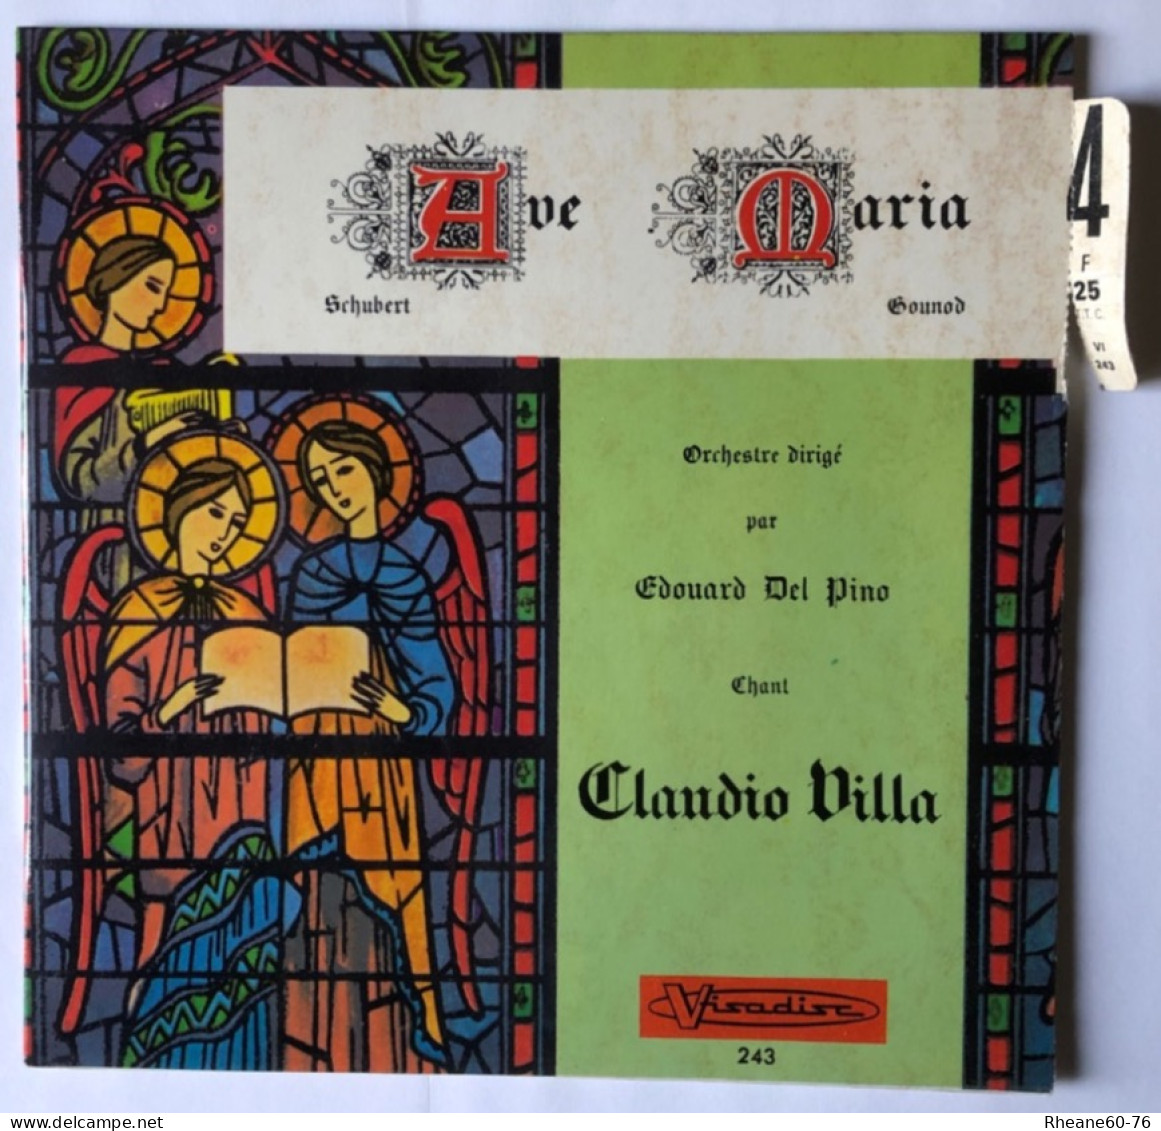 Visadisc 243 - 45T EP - Ave Maria De Schubert Chanté Par Claudio Villa Avec L’orchestre Dirigé Par Édouard Del Pino - Formats Spéciaux